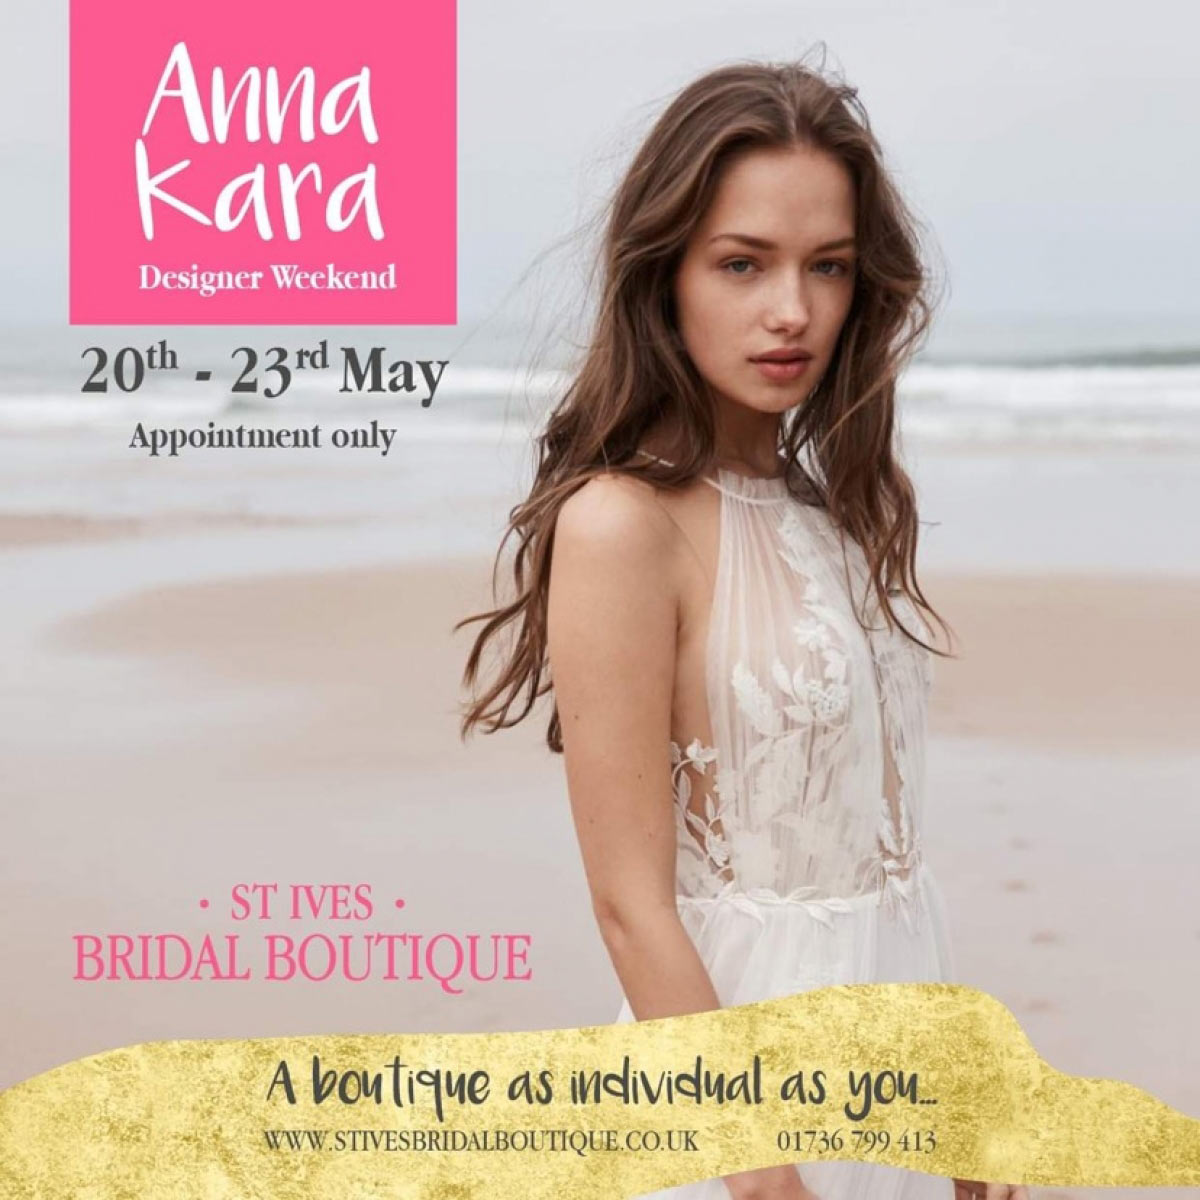 Anna Kara designer weekend at St Ives Bridal Boutique